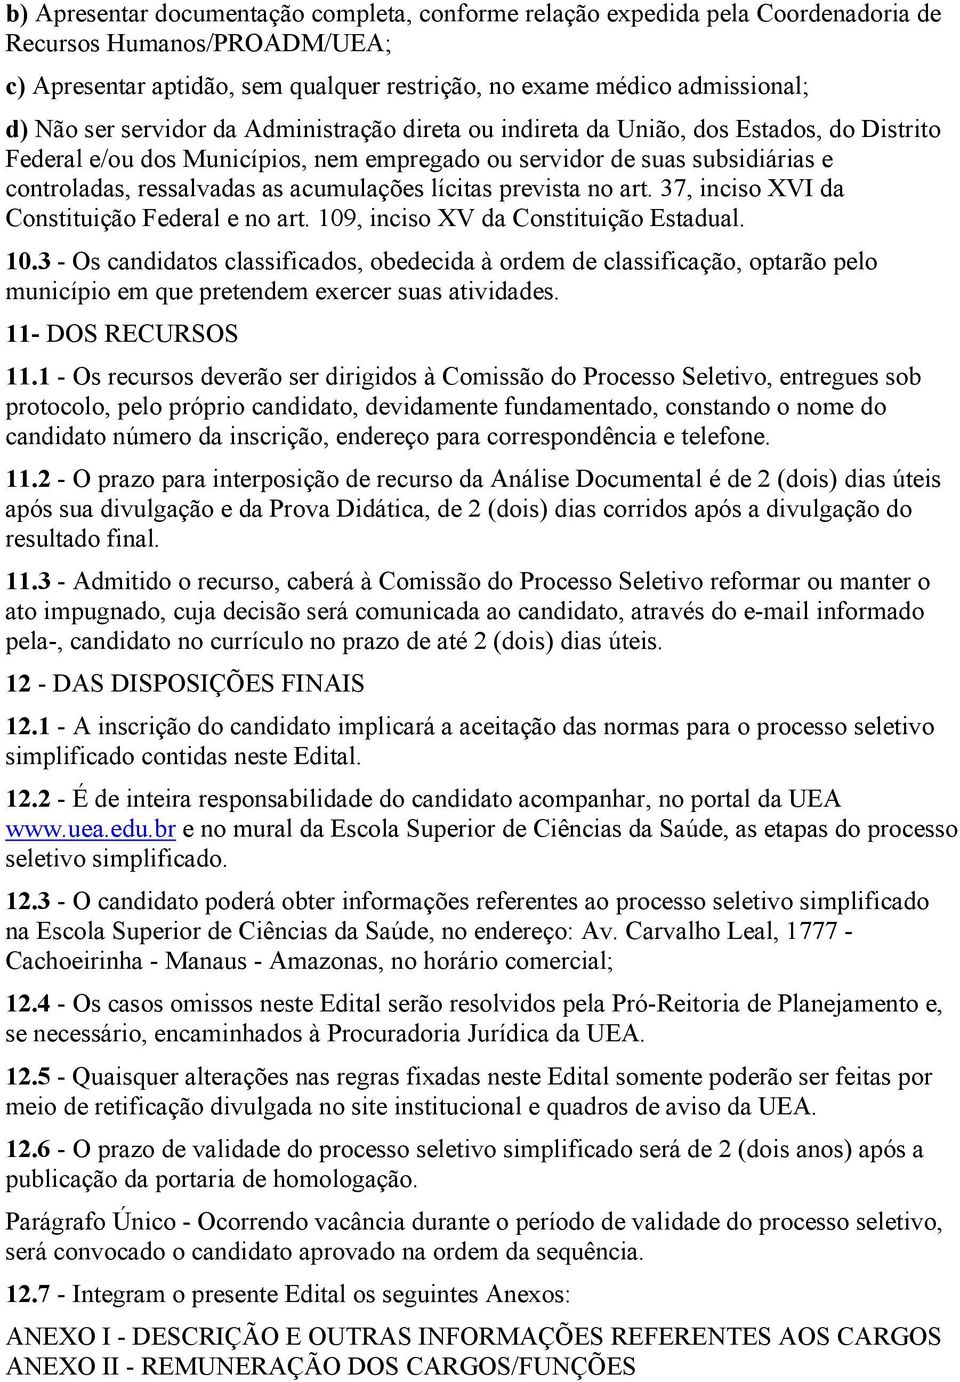 lícitas prevista art. 37, inciso XVI da Constituição Federal e art. 109